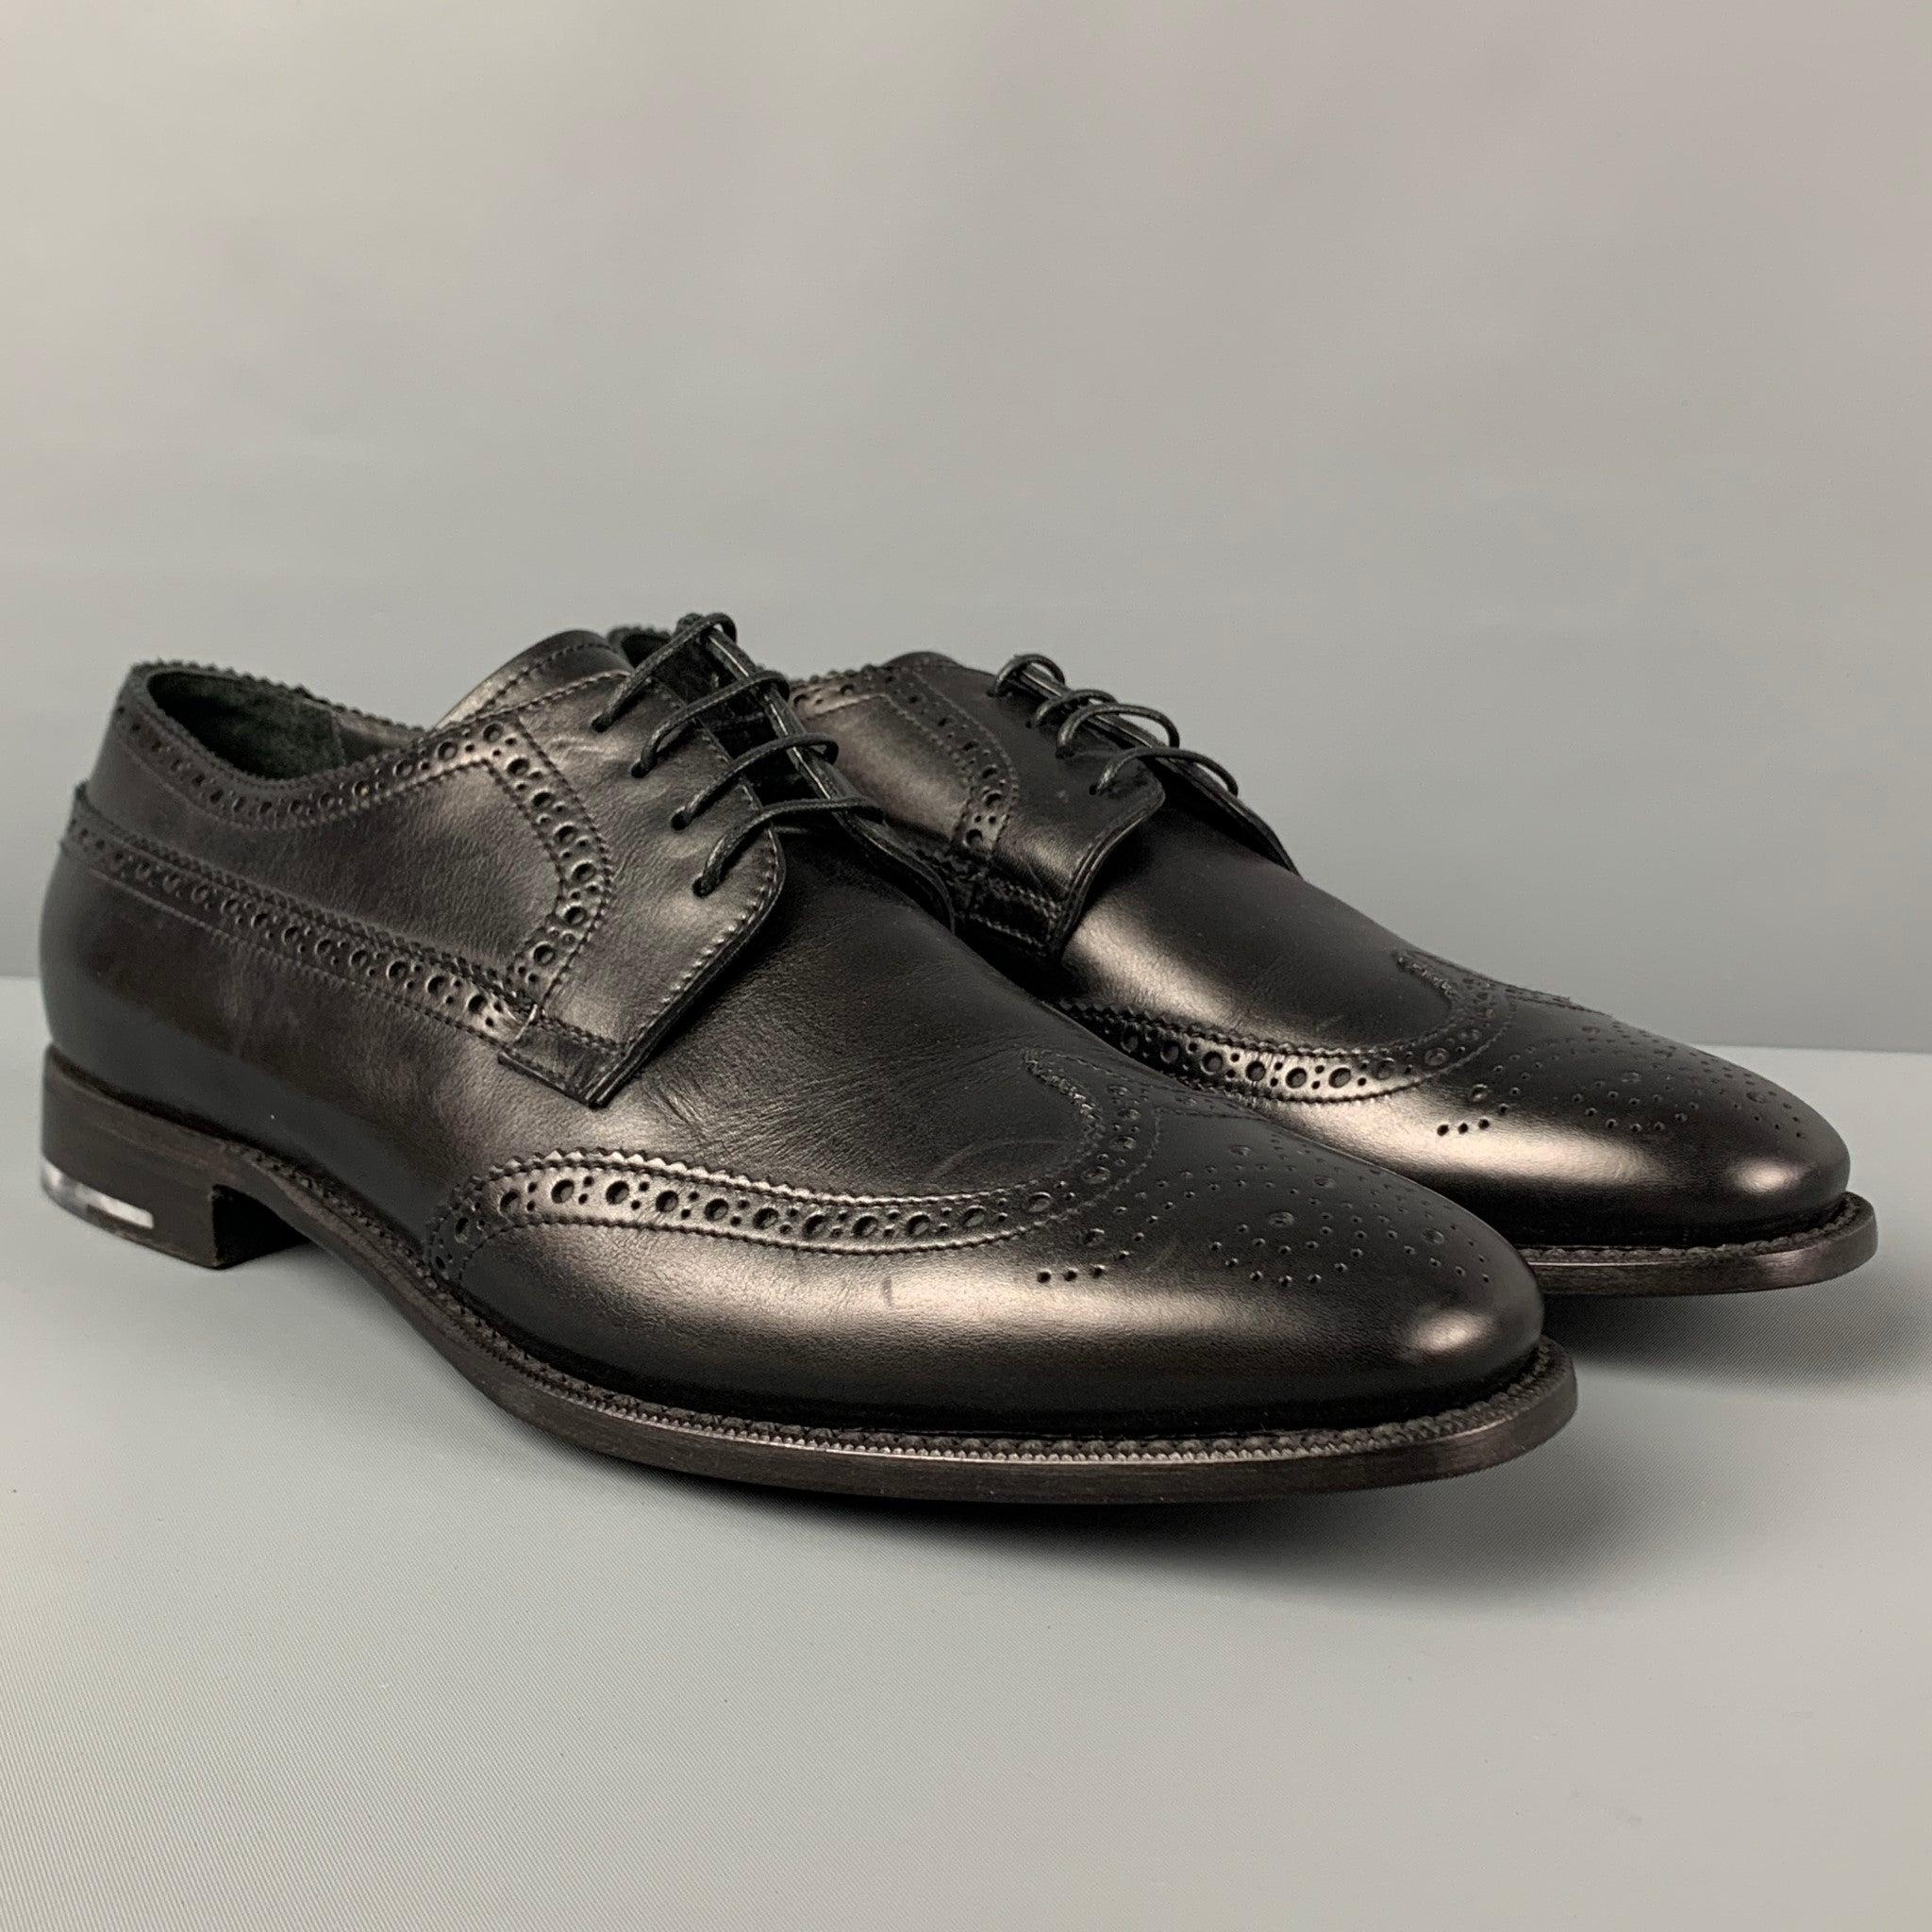 Les chaussures GIORGIO ARMANI sont en cuir perforé noir et présentent un style à bouts pointus et une fermeture à lacets. Comprend une boîte.
Très bien
Etat d'occasion. 

Marqué :  
9Semelle d'usure : 12.25 pouces  x 4,25 pouces 
  
  
 
Référence :